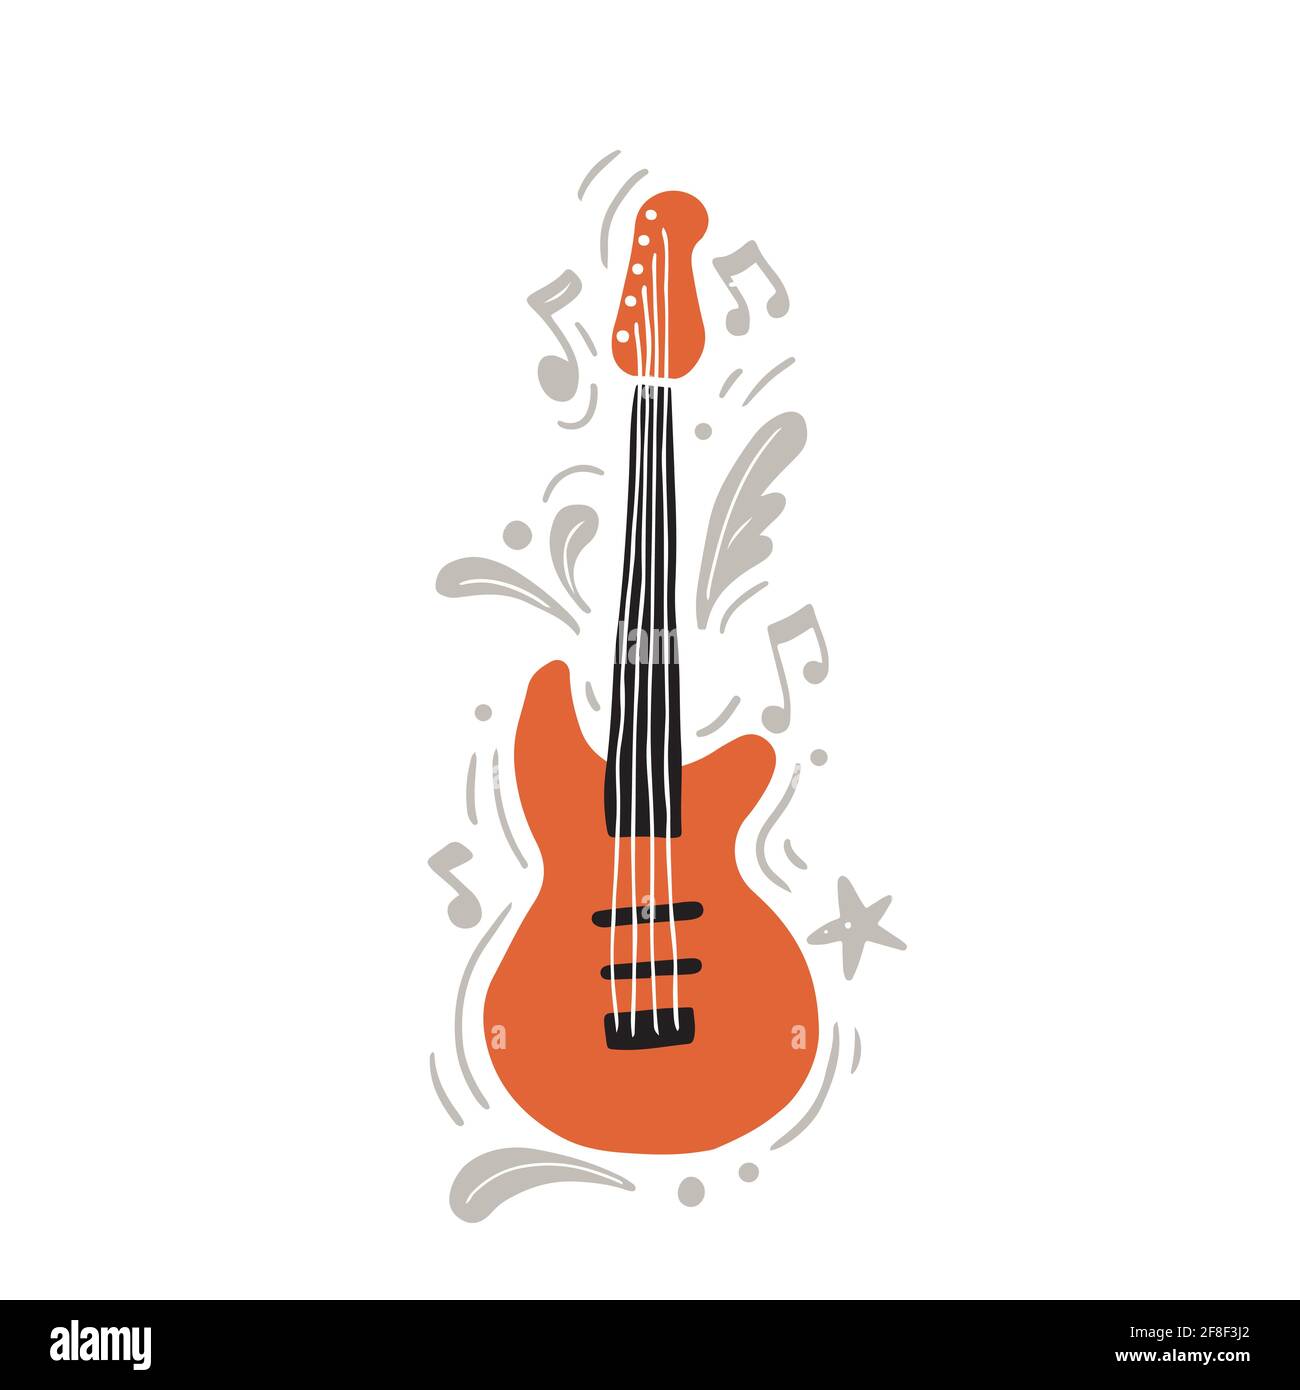 Illustration vectorielle sur guitare électrique moderne orange et noir de noir et orange dessinés à la main dans un style minimaliste jouer de la musique rock au milieu de notes et d'ornements gris Illustration de Vecteur